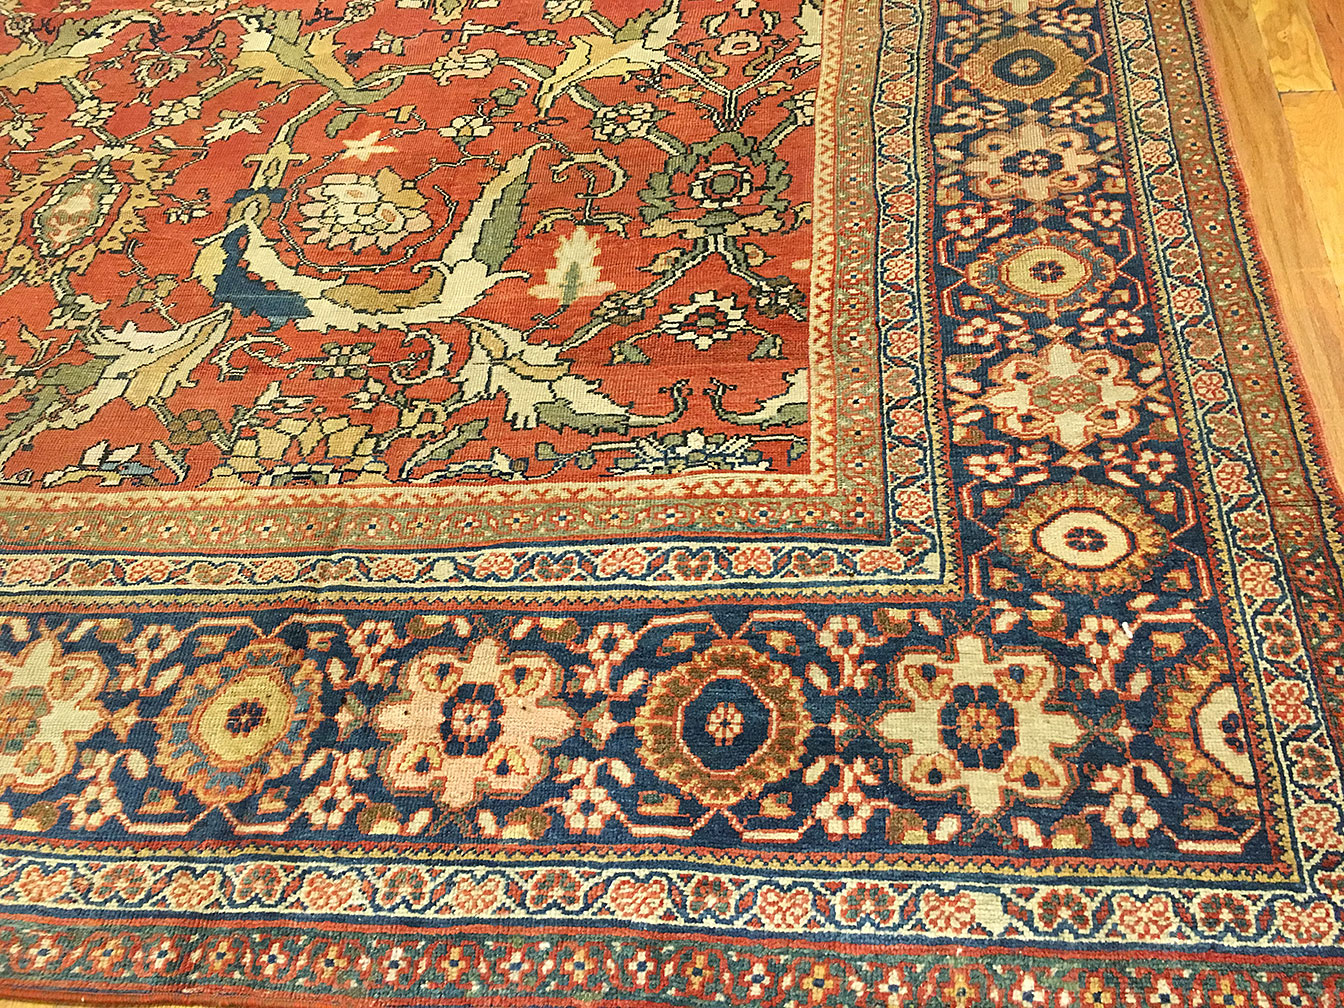 Antique sultan abad Carpet - # 52111